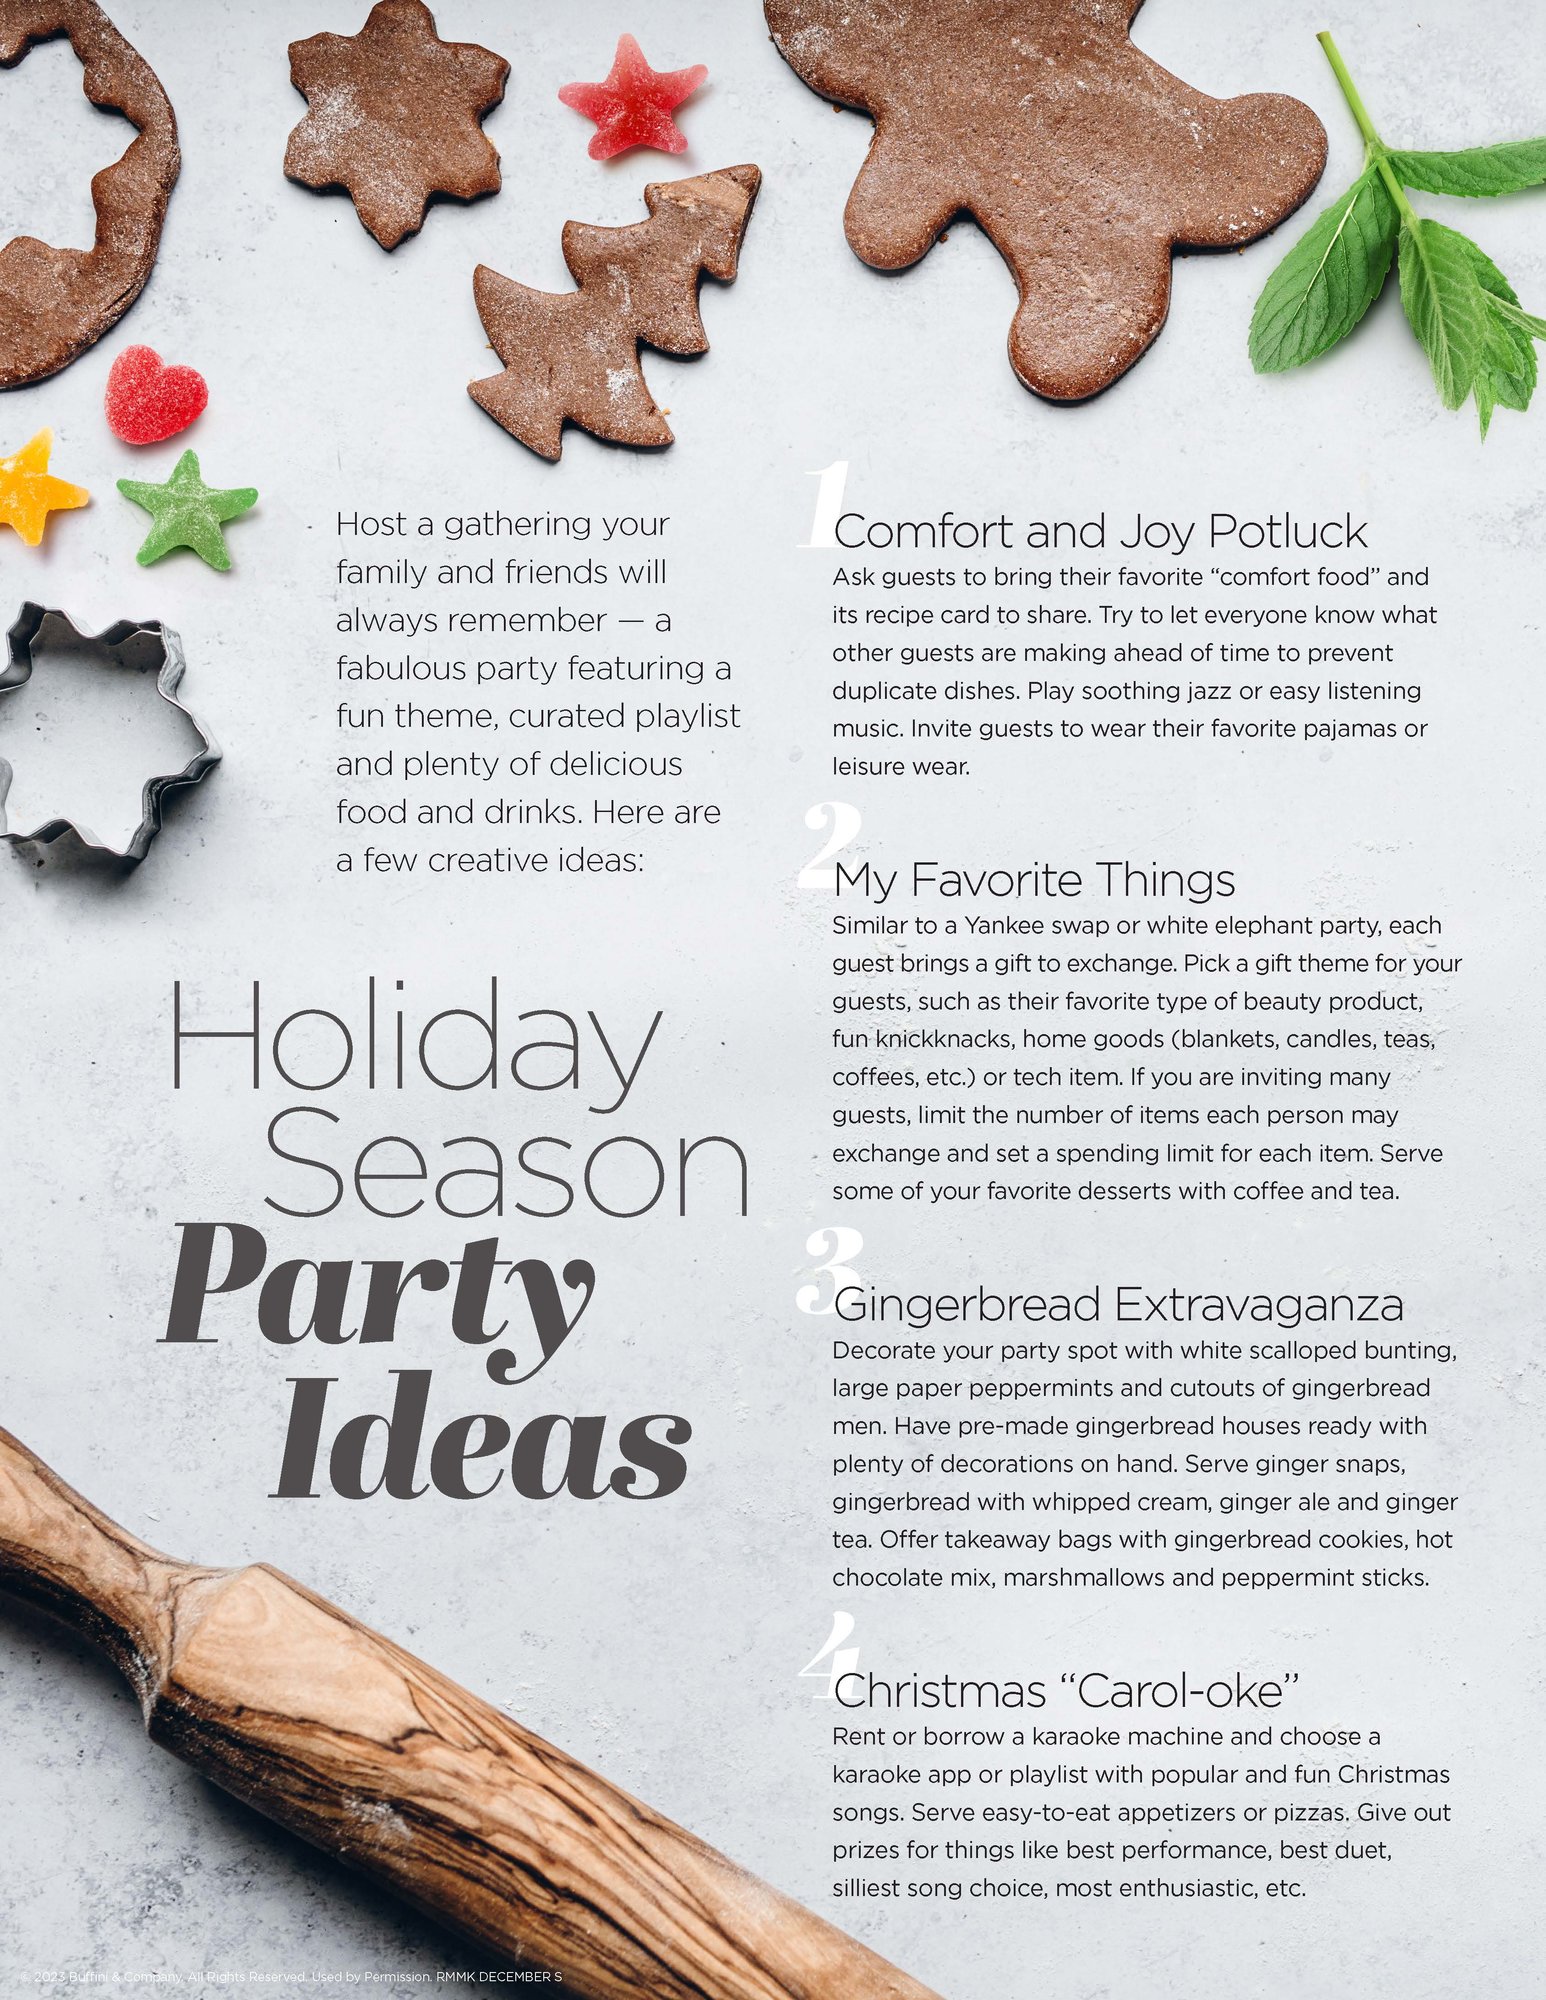 Holiday season party ideas